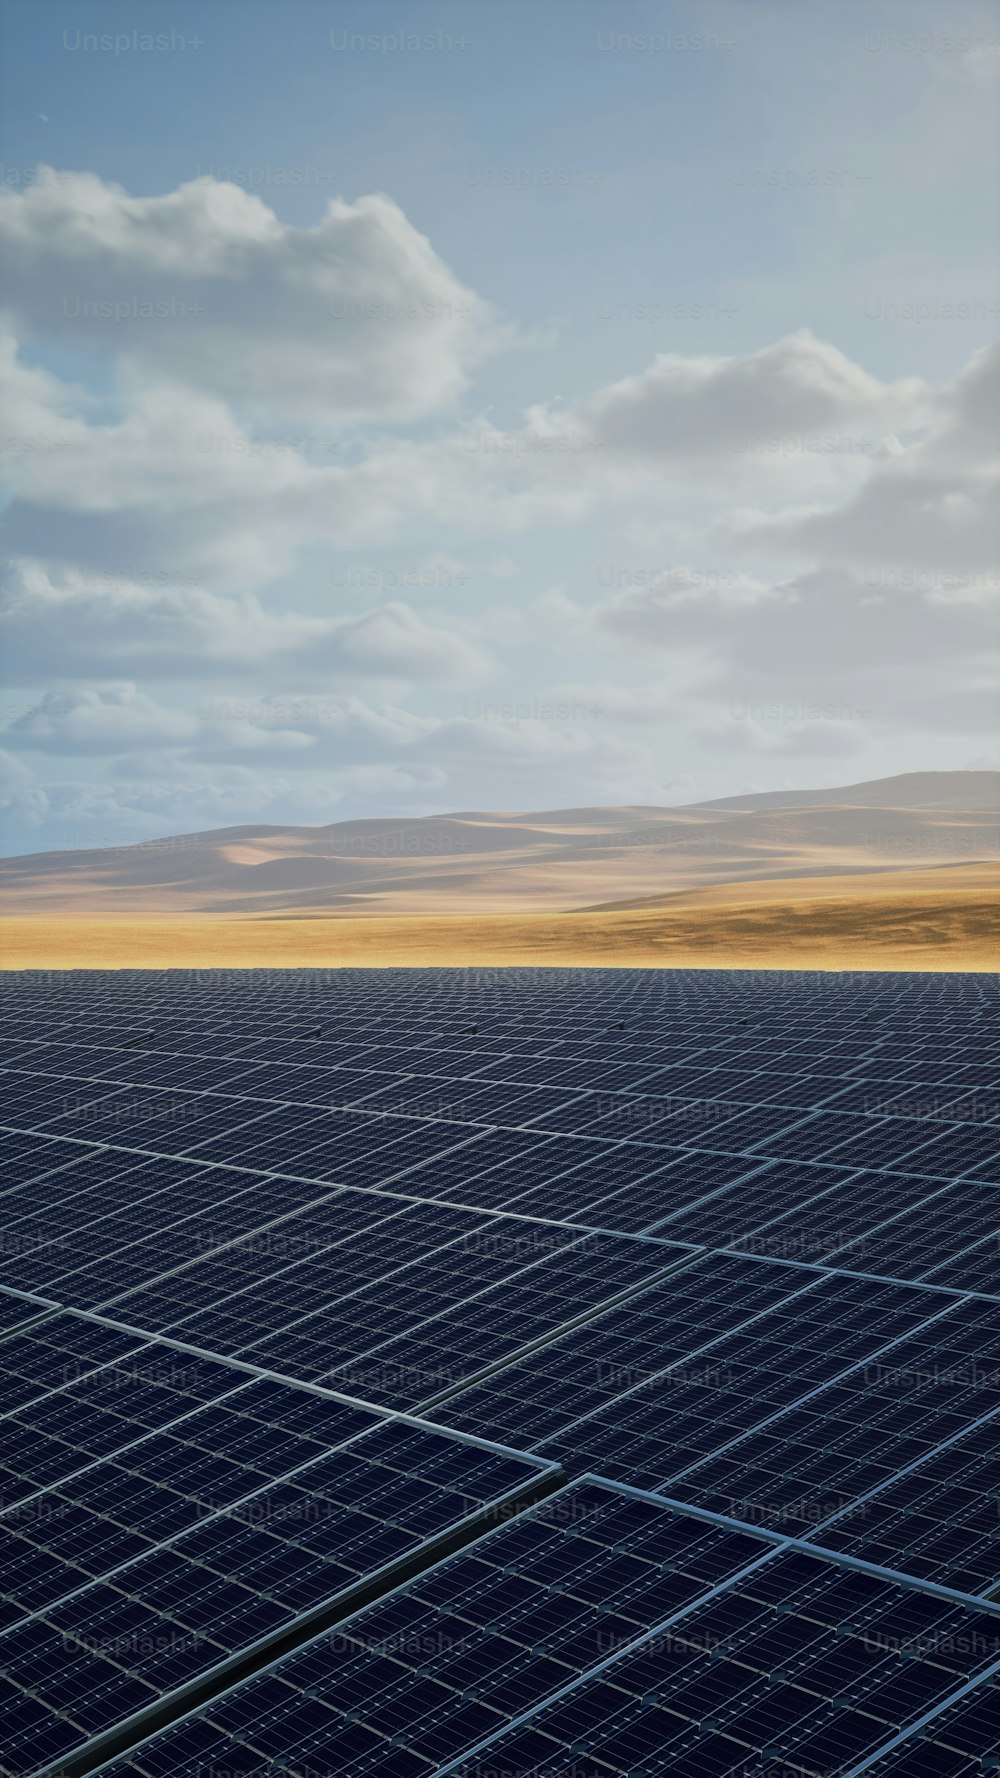 Un gran panel solar en medio de un desierto